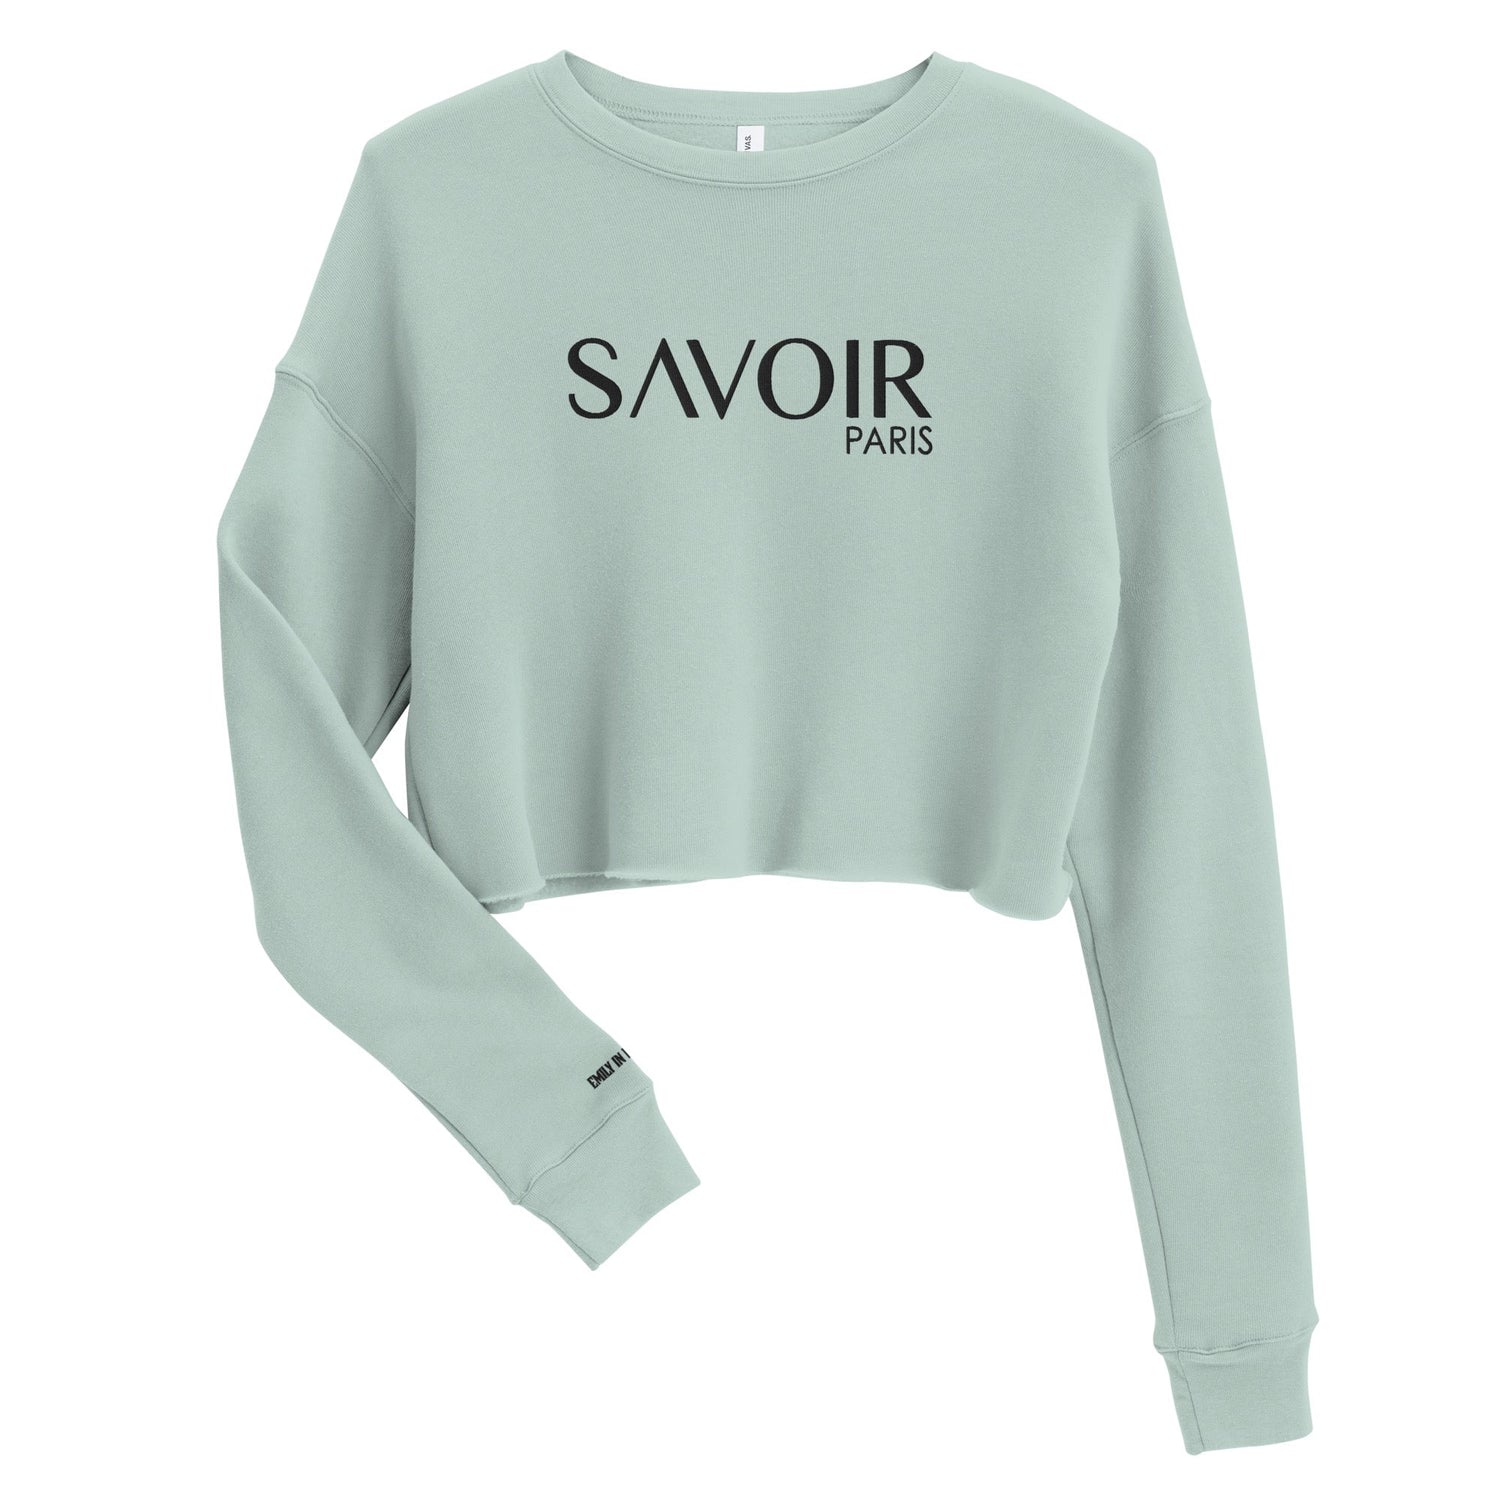 Emily in Paris Savoir Embroidered Crop Sweatshirt - Paramount Shop